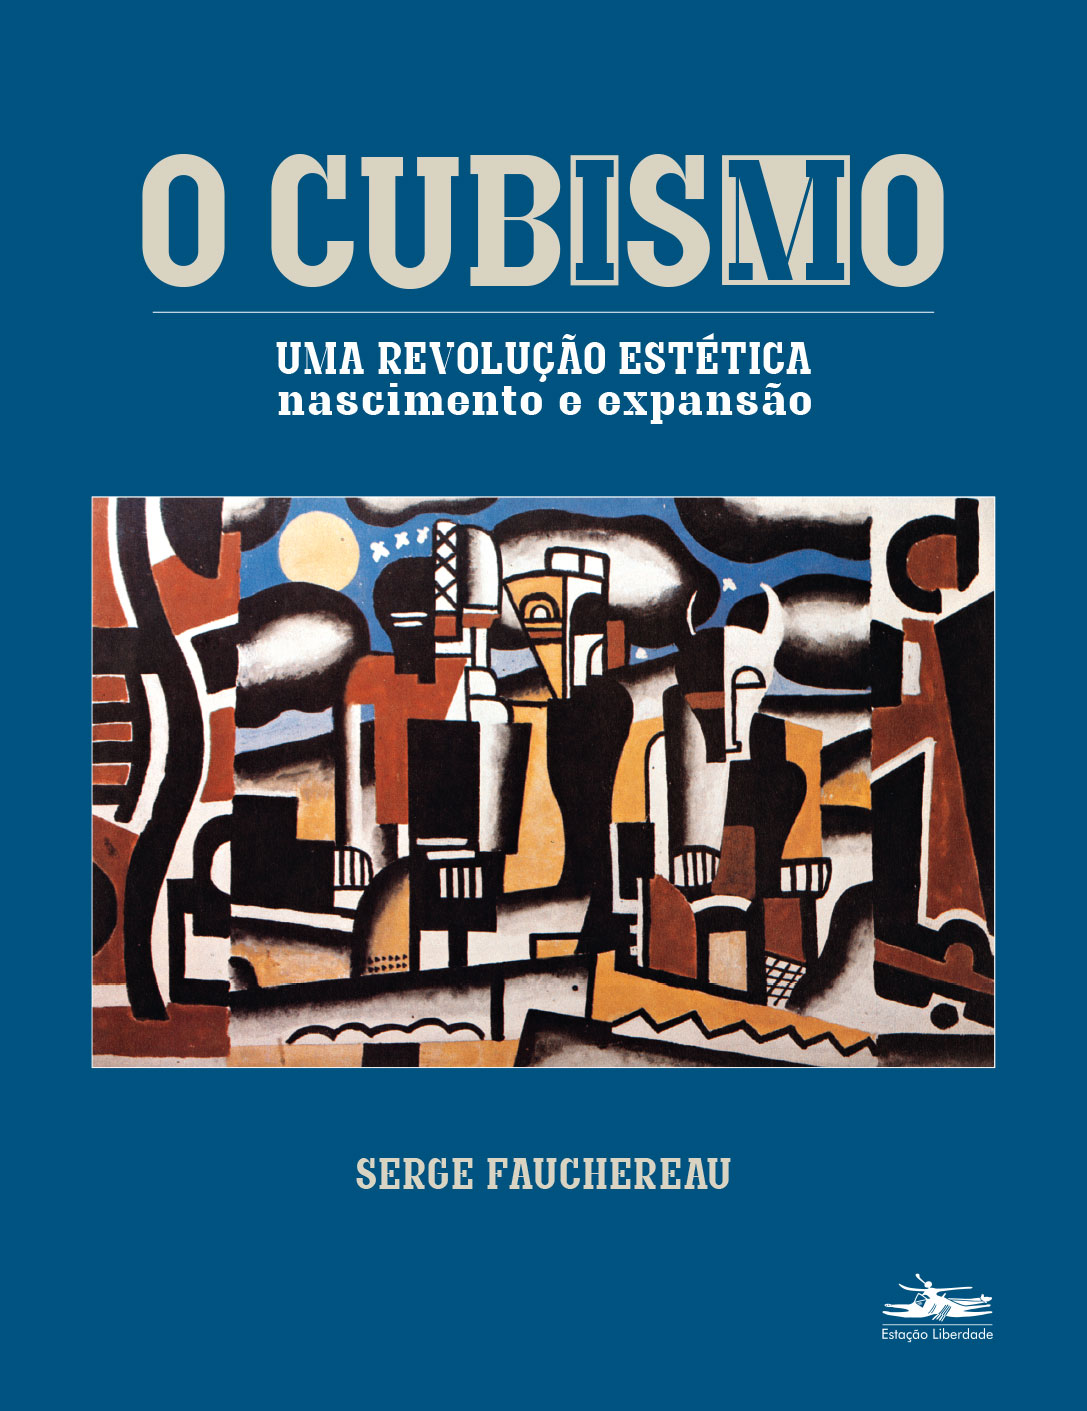 Serge Fauchereau reconstrói histórico do movimento cubista